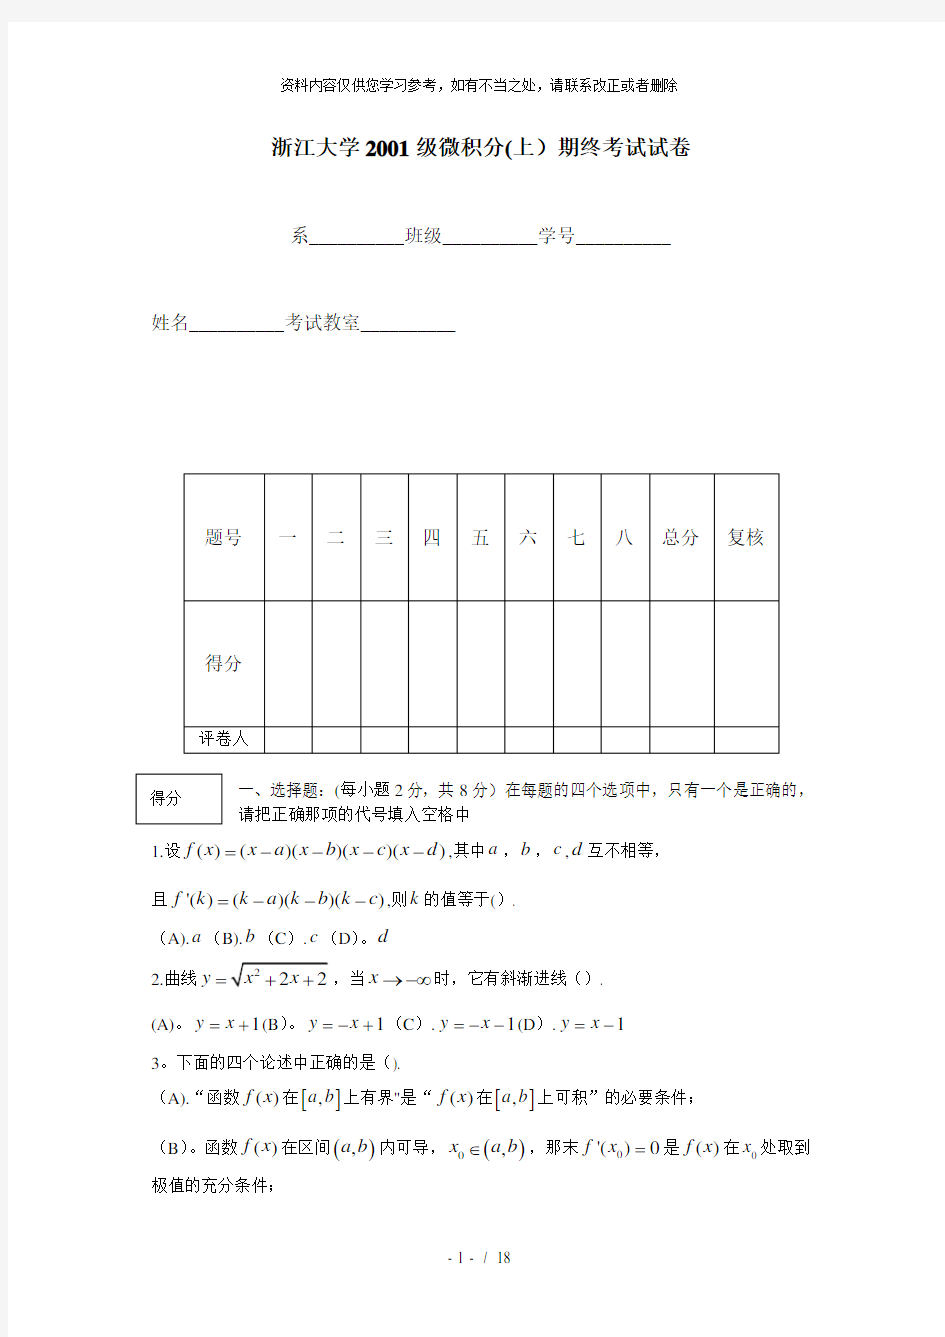 【精品】浙江大学0104级微积分试卷